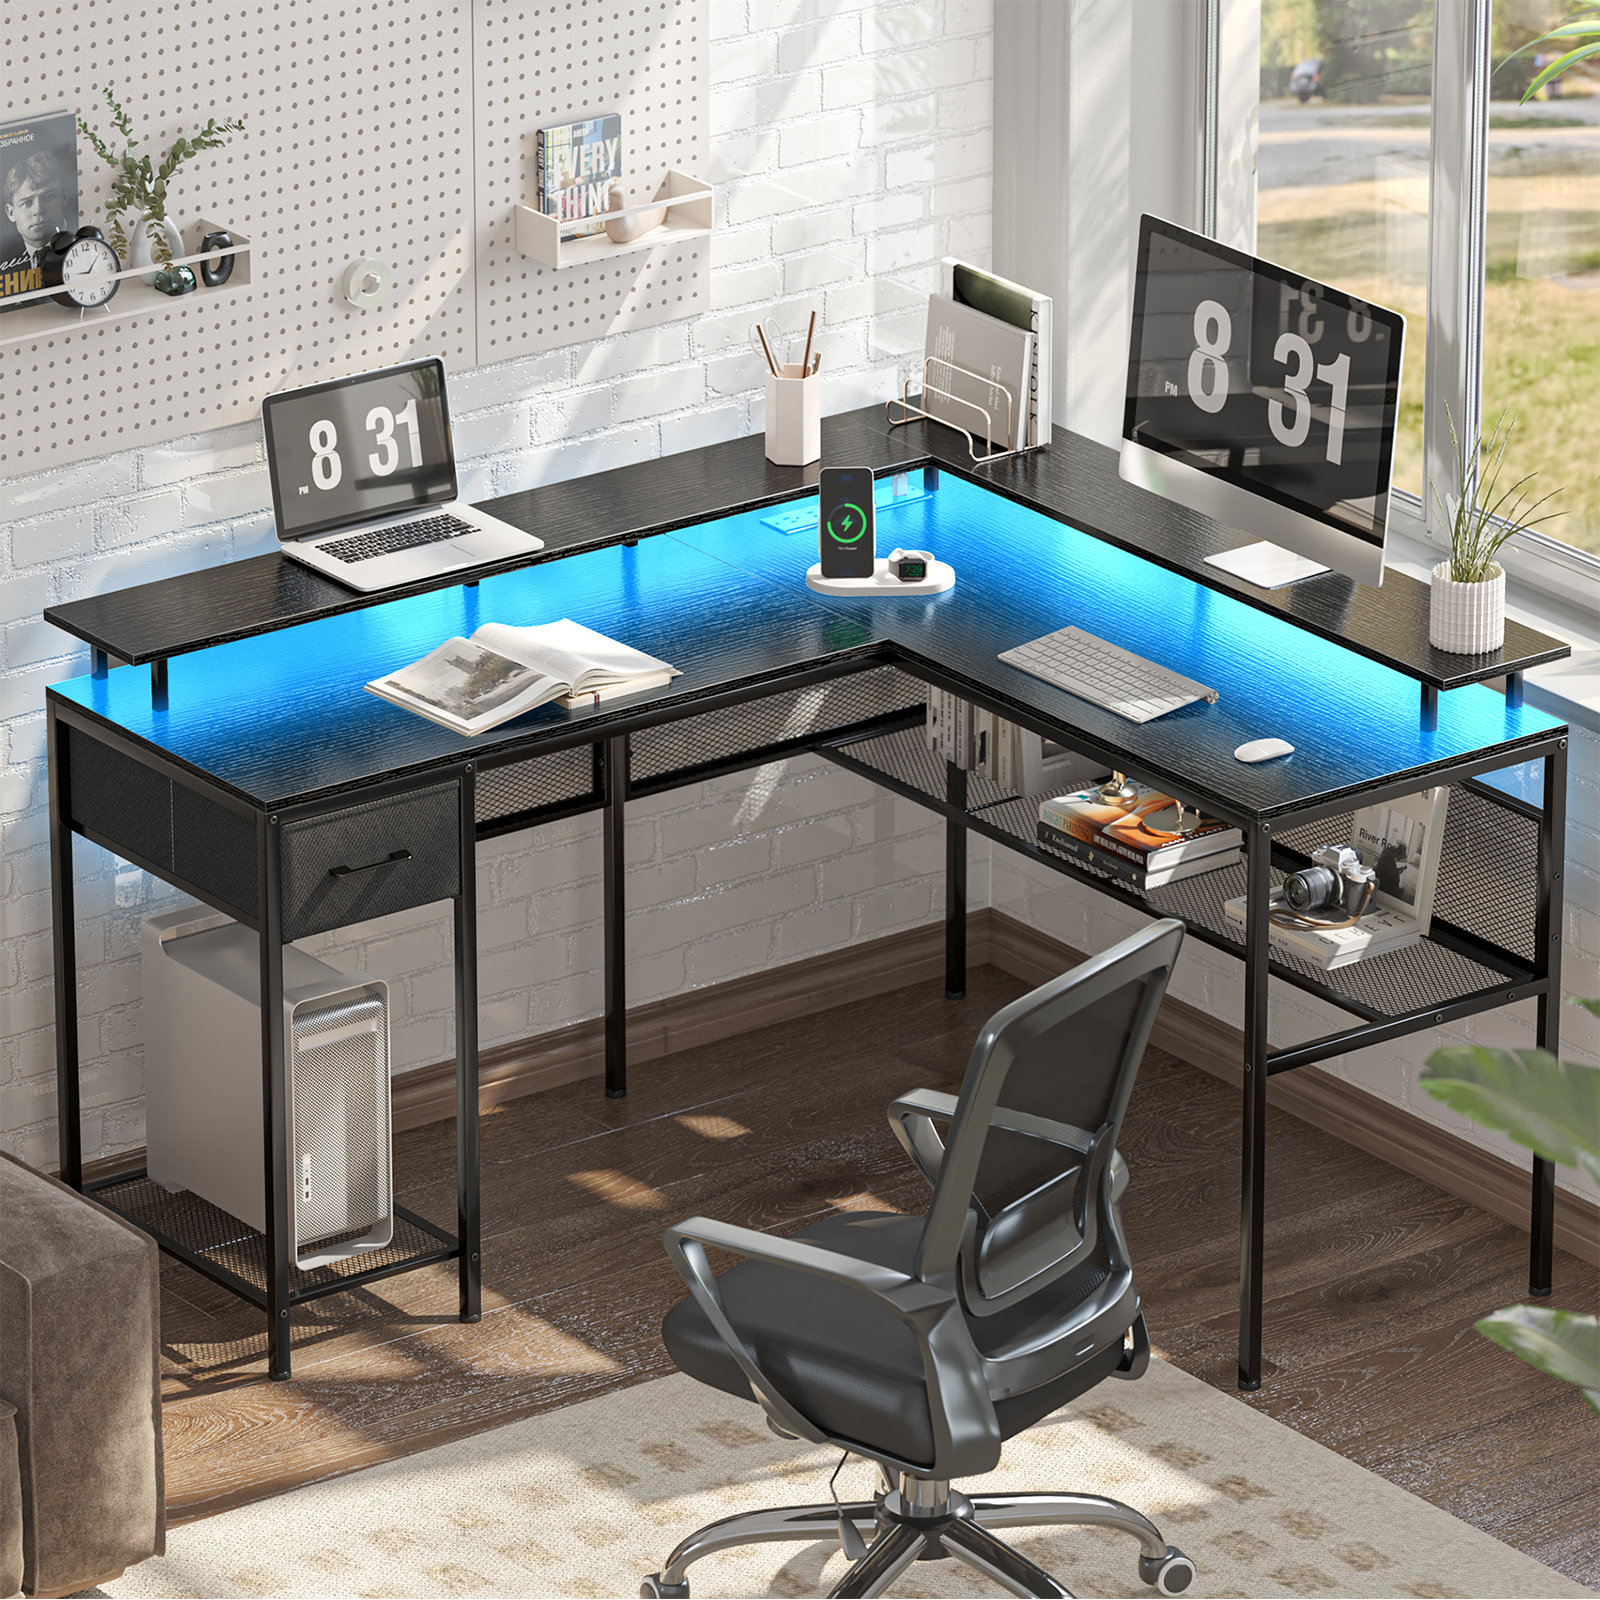 https://assets.wfcdn.com/im/58051918/compr-r85/2524/252439306/hallsburg-55-l-shaped-desk-gaming-desk-with-led-lights-power-outlets-computer-desk-with-storage-shelves.jpg